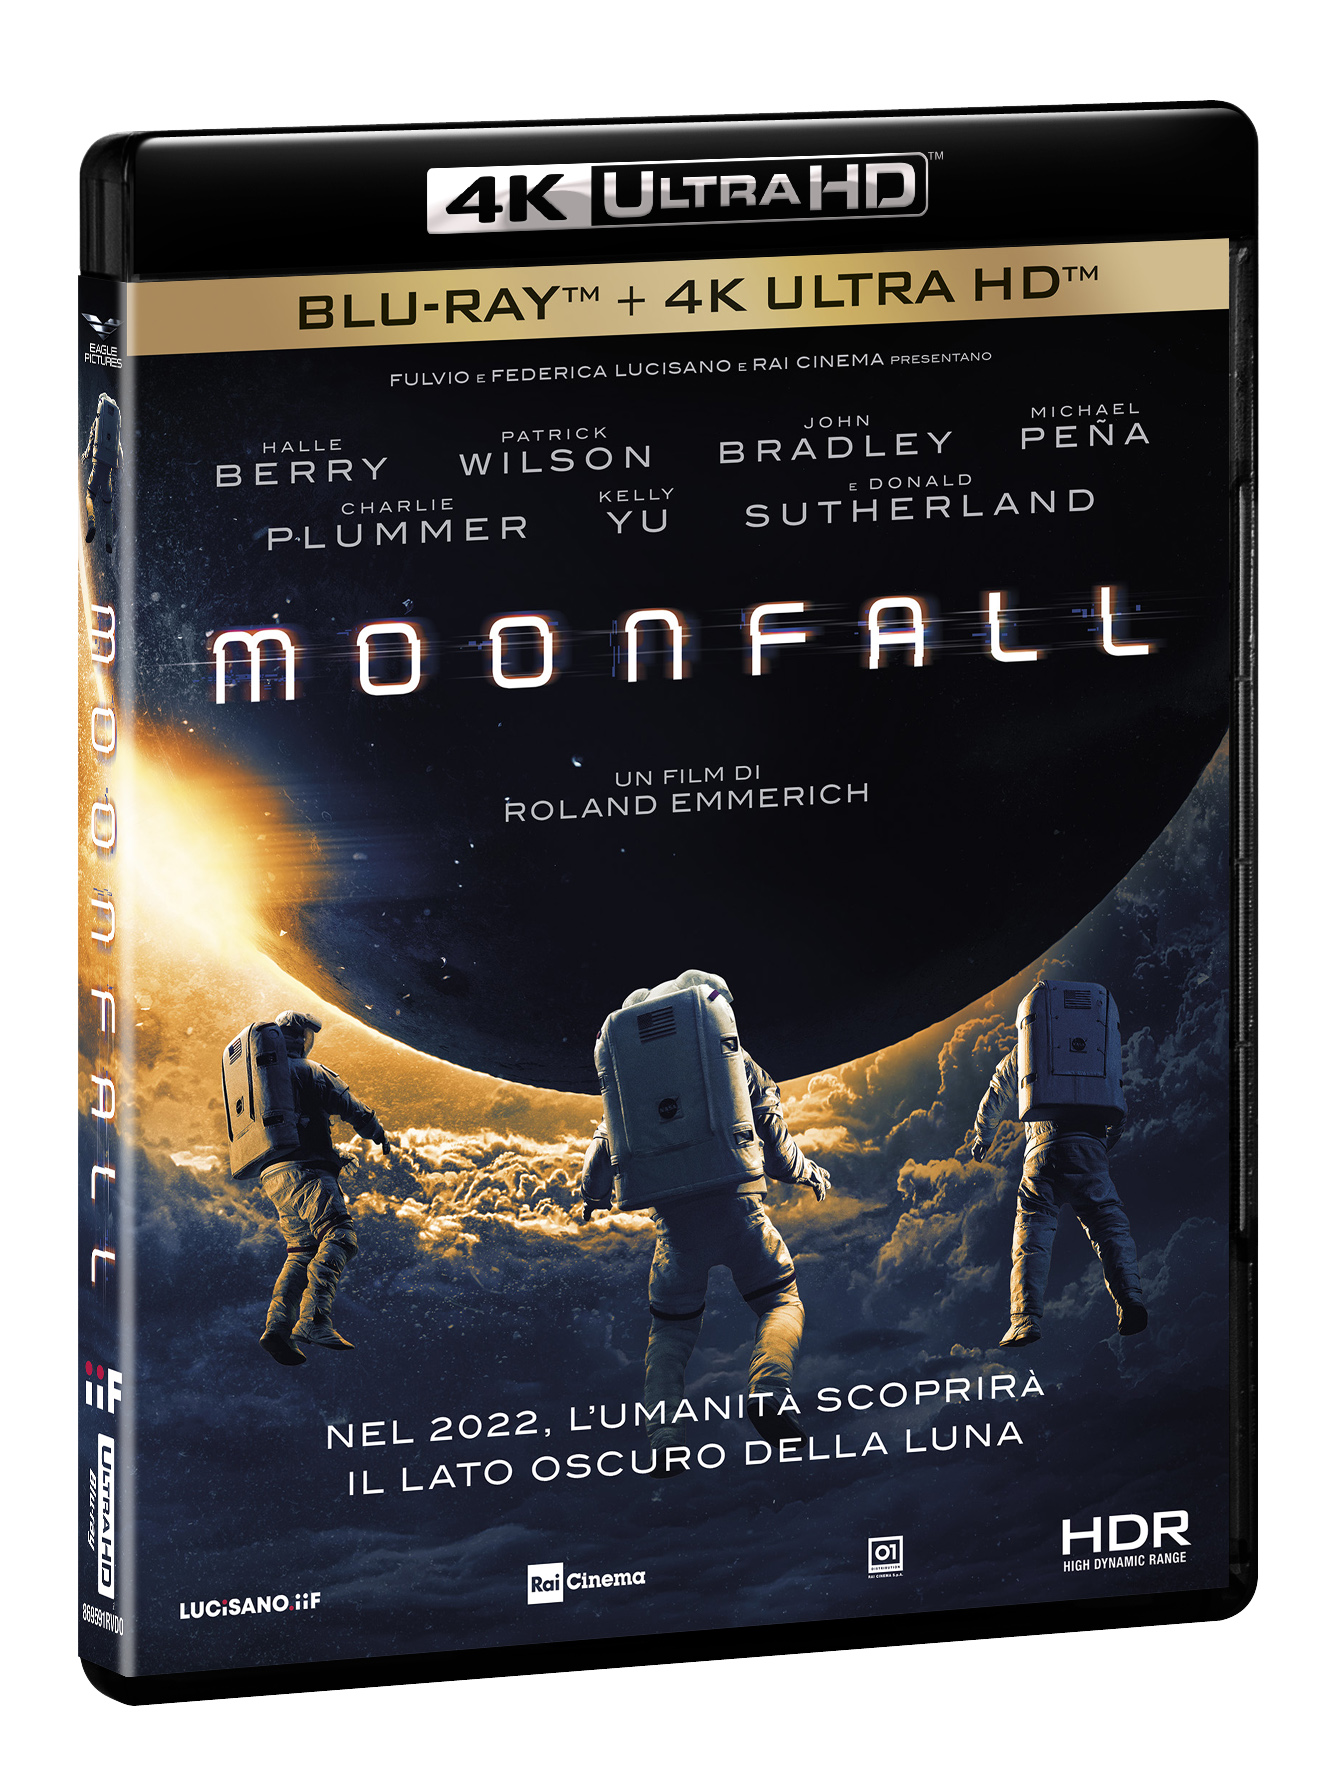 Blu-Ray Moonfall (4K Ultra Hd+Blu-Ray Hd) NUOVO SIGILLATO, EDIZIONE DEL 06/07/2022 SUBITO DISPONIBILE